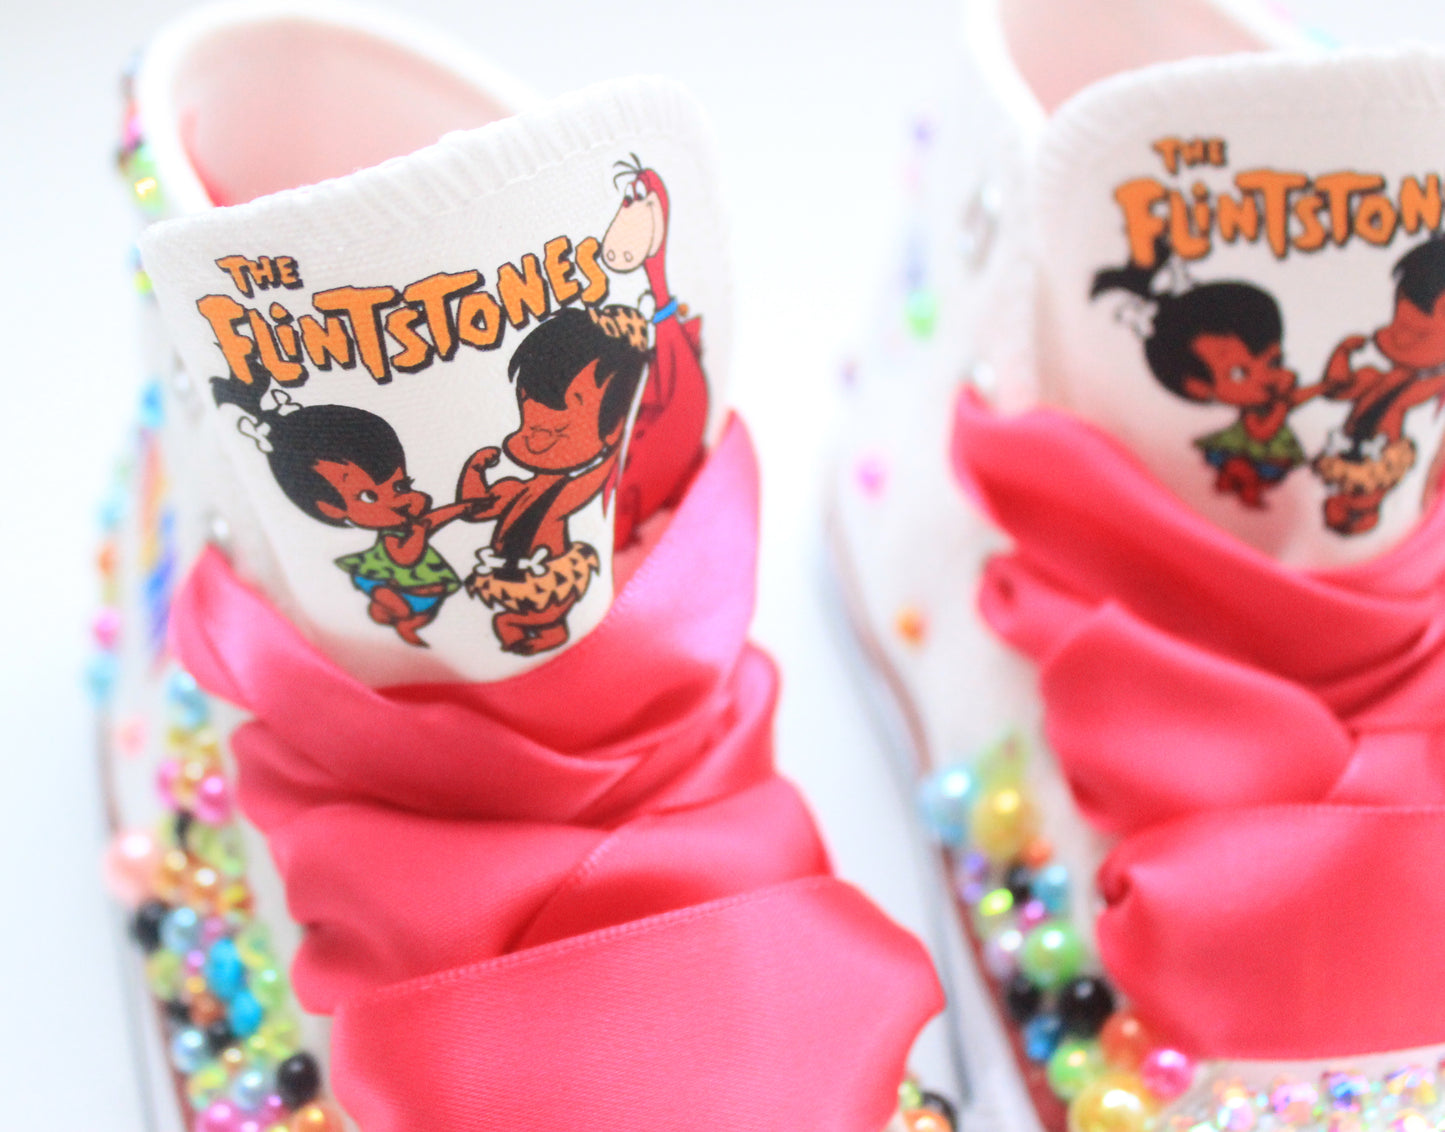 Flintstone shoes- Flintstone bling Converse-Girls Flintstone Shoes-Flintstone Converse